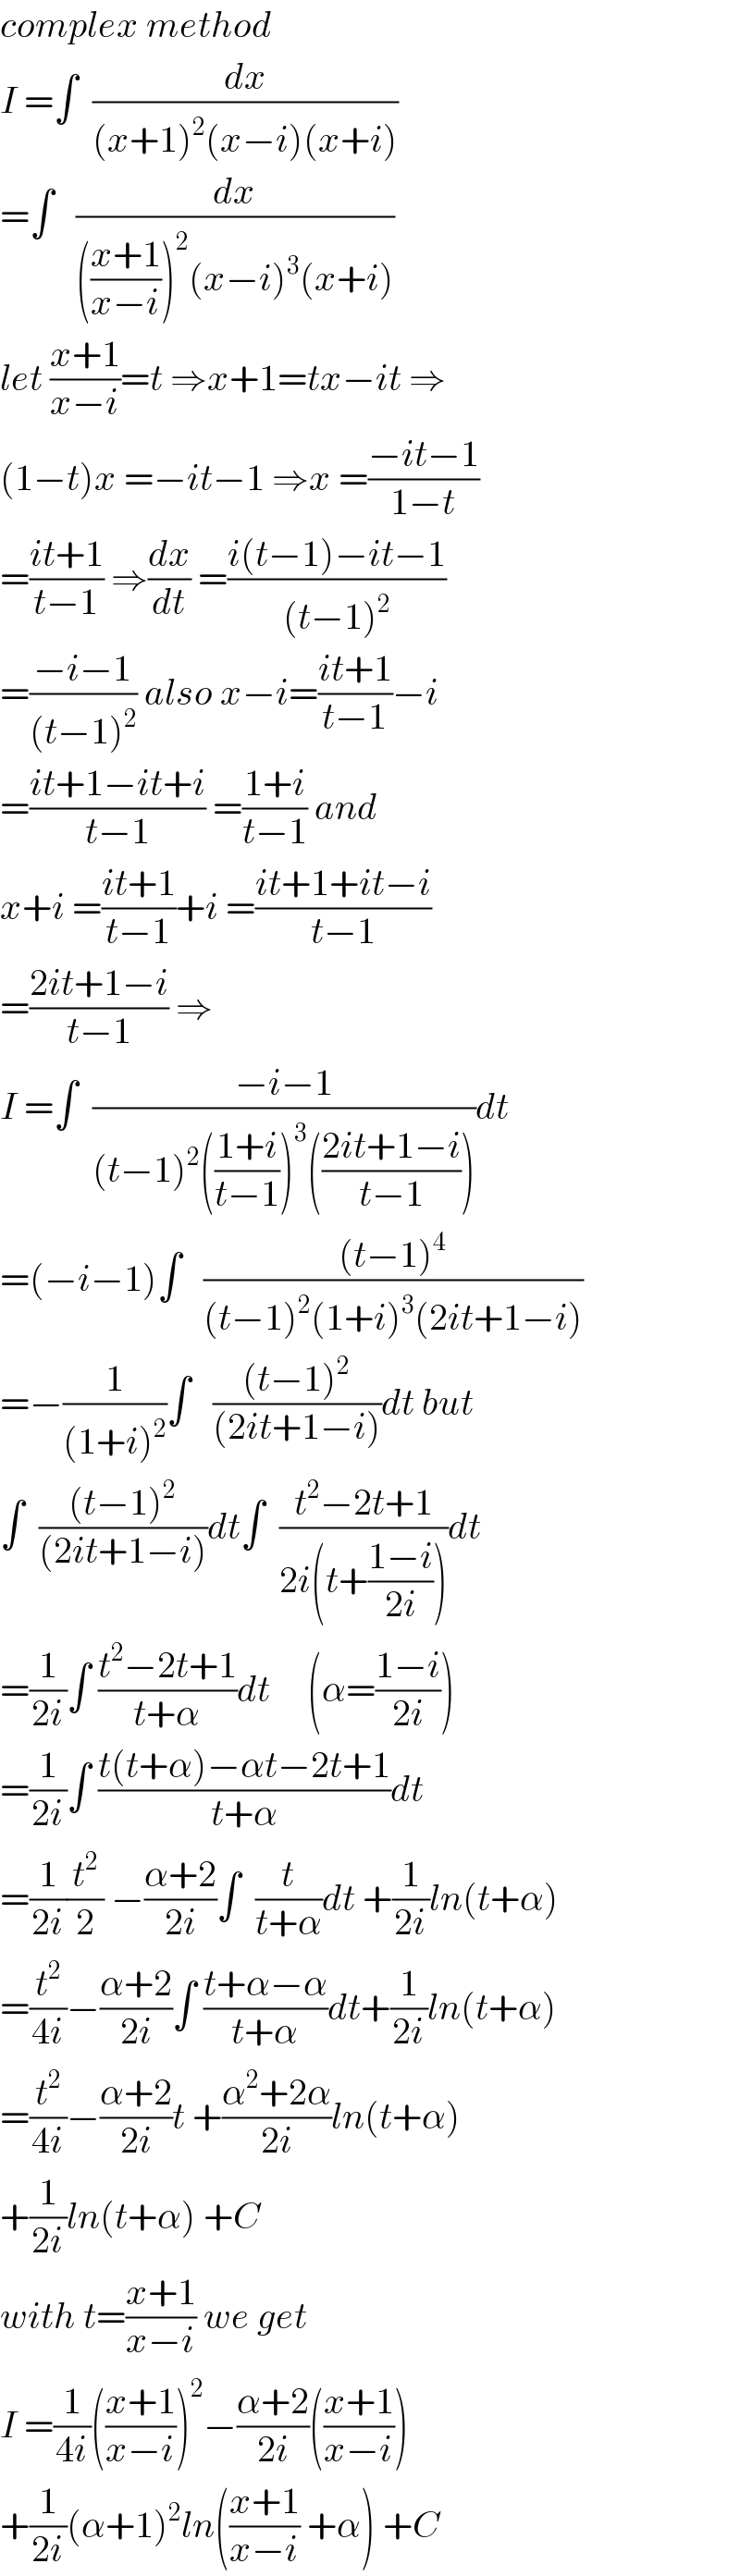 complex method  I =∫  (dx/((x+1)^2 (x−i)(x+i)))  =∫   (dx/((((x+1)/(x−i)))^2 (x−i)^3 (x+i)))  let ((x+1)/(x−i))=t ⇒x+1=tx−it ⇒  (1−t)x =−it−1 ⇒x =((−it−1)/(1−t))  =((it+1)/(t−1)) ⇒(dx/dt) =((i(t−1)−it−1)/((t−1)^2 ))  =((−i−1)/((t−1)^2 )) also x−i=((it+1)/(t−1))−i  =((it+1−it+i)/(t−1)) =((1+i)/(t−1)) and  x+i =((it+1)/(t−1))+i =((it+1+it−i)/(t−1))  =((2it+1−i)/(t−1)) ⇒  I =∫  ((−i−1)/((t−1)^2 (((1+i)/(t−1)))^3 (((2it+1−i)/(t−1)))))dt  =(−i−1)∫   (((t−1)^4 )/((t−1)^2 (1+i)^3 (2it+1−i)))  =−(1/((1+i)^2 ))∫   (((t−1)^2 )/((2it+1−i)))dt but  ∫  (((t−1)^2 )/((2it+1−i)))dt∫  ((t^2 −2t+1)/(2i(t+((1−i)/(2i)))))dt  =(1/(2i))∫ ((t^2 −2t+1)/(t+α))dt     (α=((1−i)/(2i)))  =(1/(2i))∫ ((t(t+α)−αt−2t+1)/(t+α))dt  =(1/(2i))(t^2 /2) −((α+2)/(2i))∫  (t/(t+α))dt +(1/(2i))ln(t+α)  =(t^2 /(4i))−((α+2)/(2i))∫ ((t+α−α)/(t+α))dt+(1/(2i))ln(t+α)  =(t^2 /(4i))−((α+2)/(2i))t +((α^2 +2α)/(2i))ln(t+α)  +(1/(2i))ln(t+α) +C  with t=((x+1)/(x−i)) we get  I =(1/(4i))(((x+1)/(x−i)))^2 −((α+2)/(2i))(((x+1)/(x−i)))  +(1/(2i))(α+1)^2 ln(((x+1)/(x−i)) +α) +C  